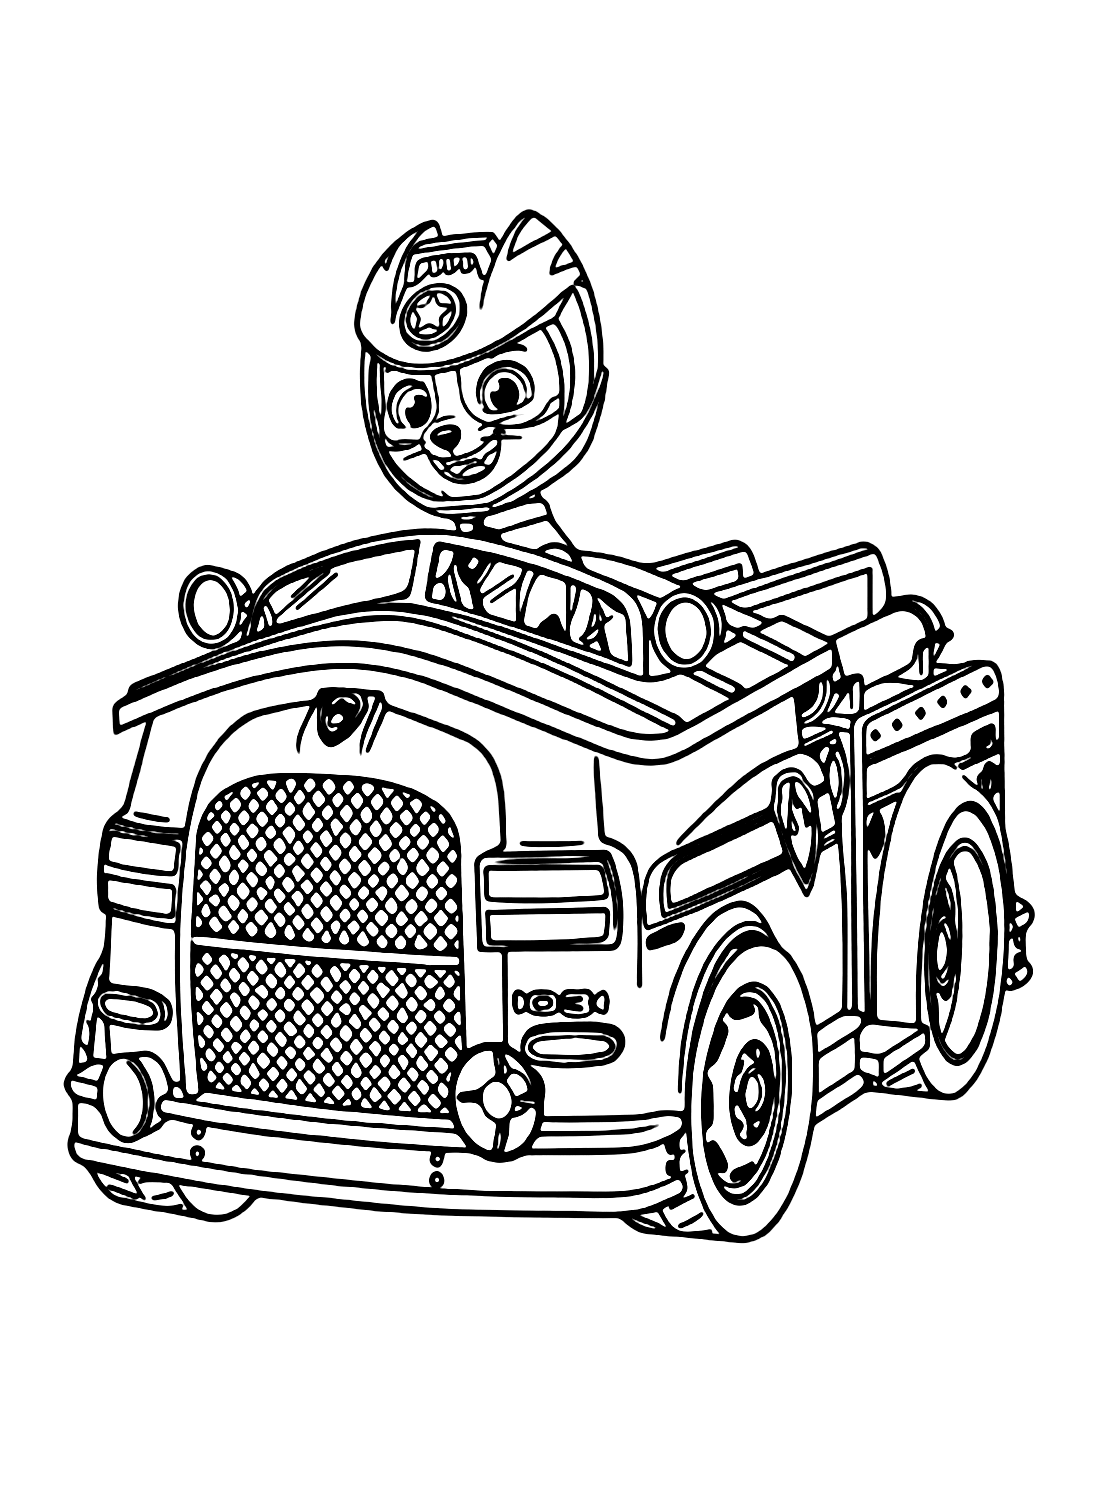 Щенячий патруль: Дикий кот с машиной из мультфильма «Дикий кот» Щенячий патруль